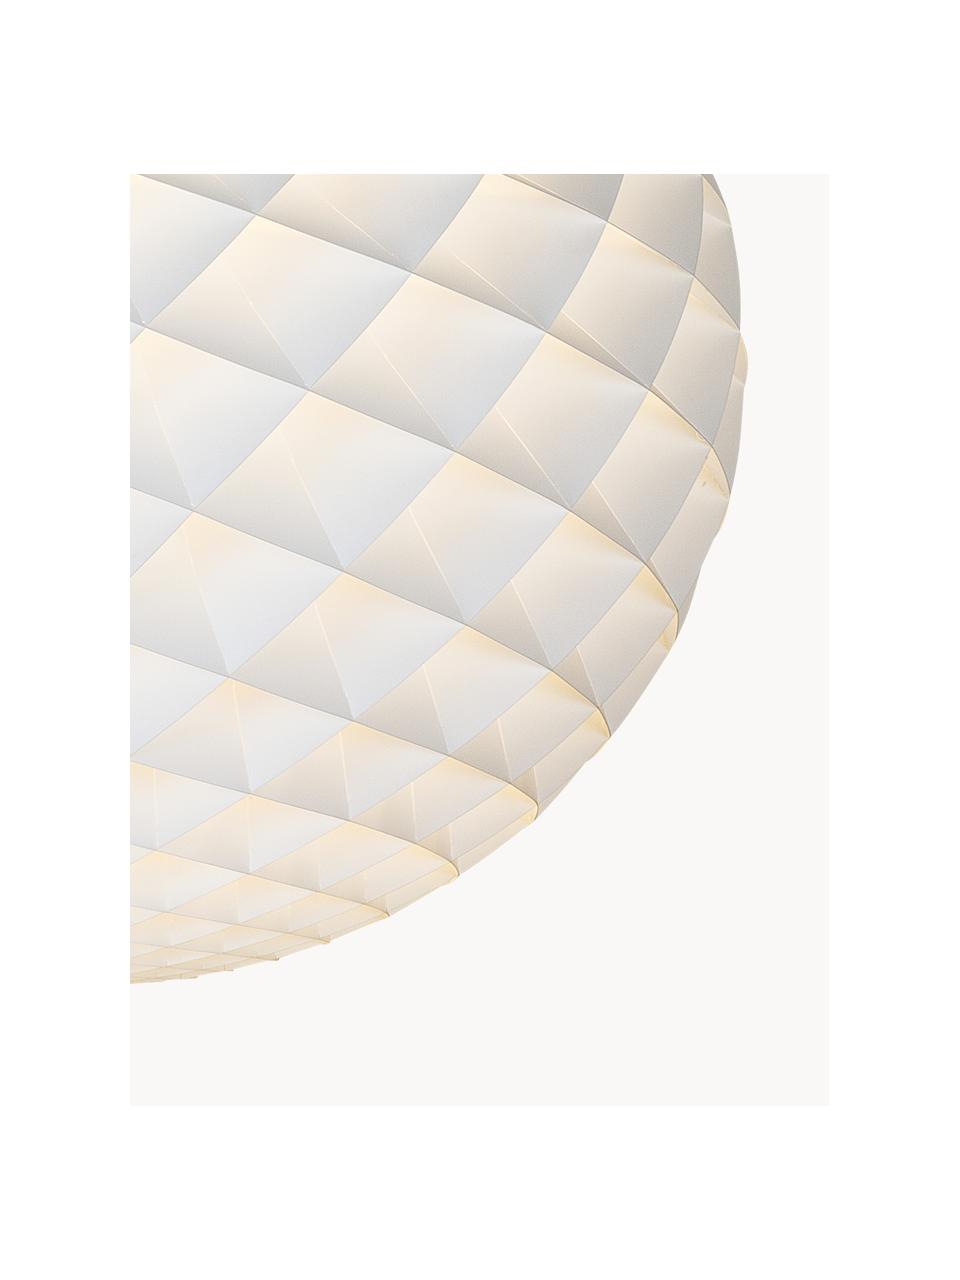 Lampa wisząca Patera, różne rozmiary, Oferta nie obejmuje żarówki, Ø 30 x 31 cm